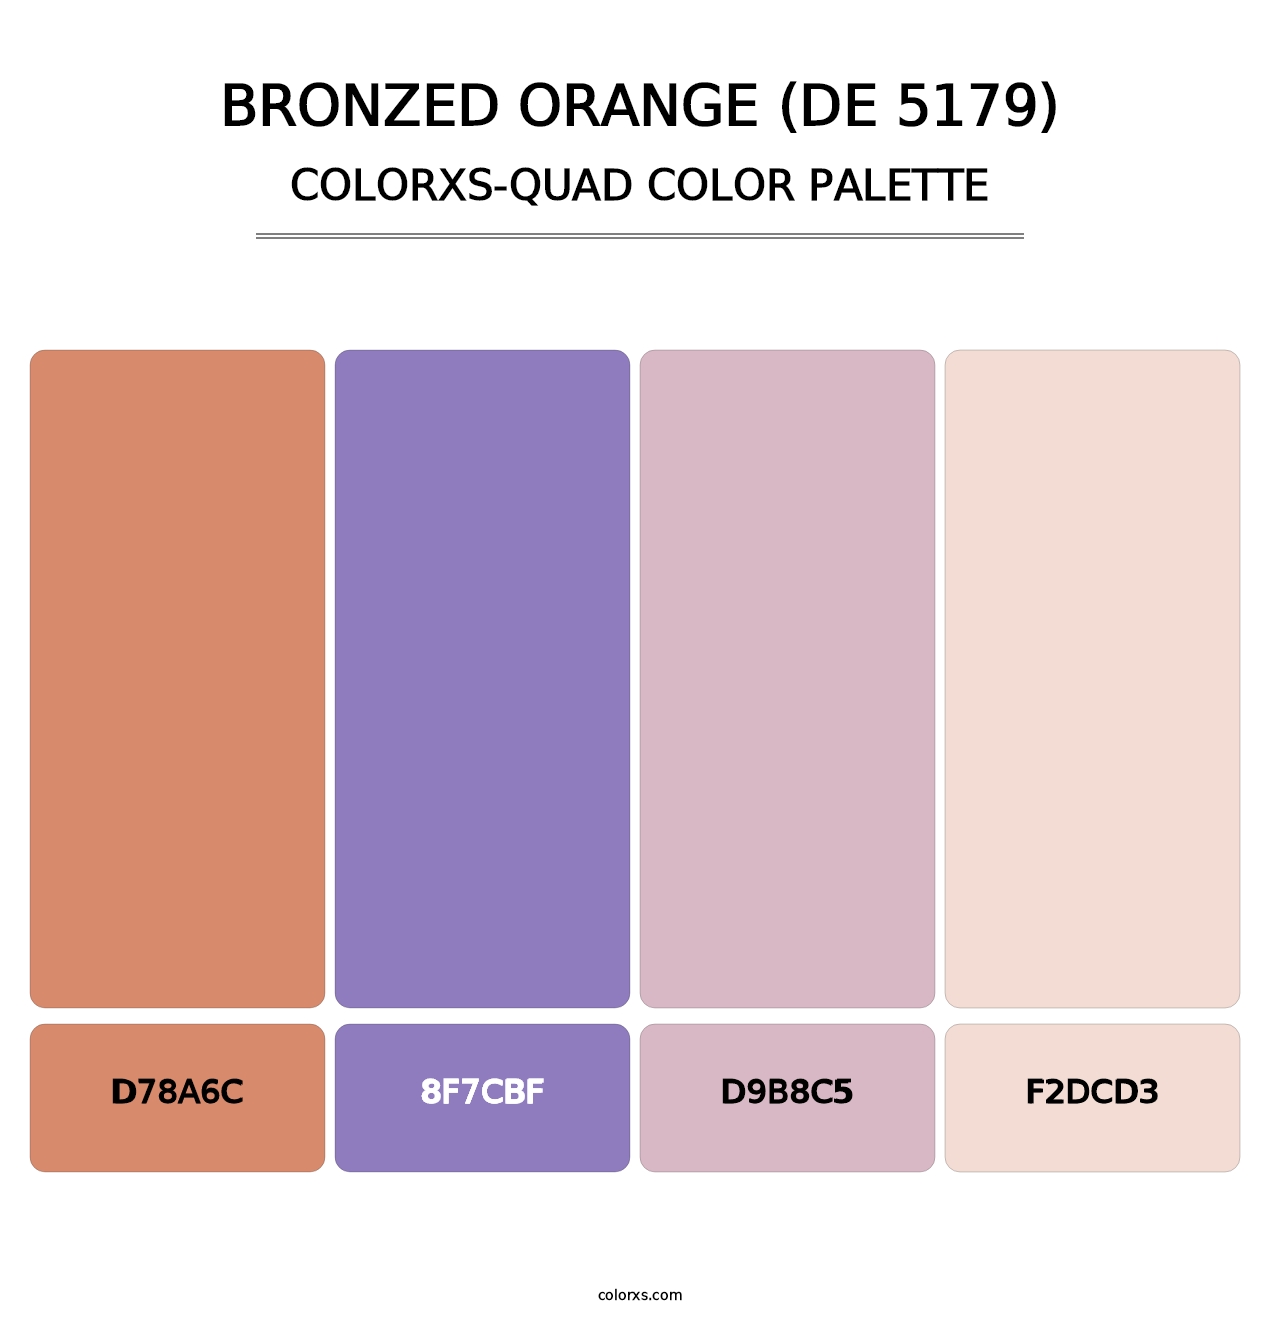 Bronzed Orange (DE 5179) - Colorxs Quad Palette